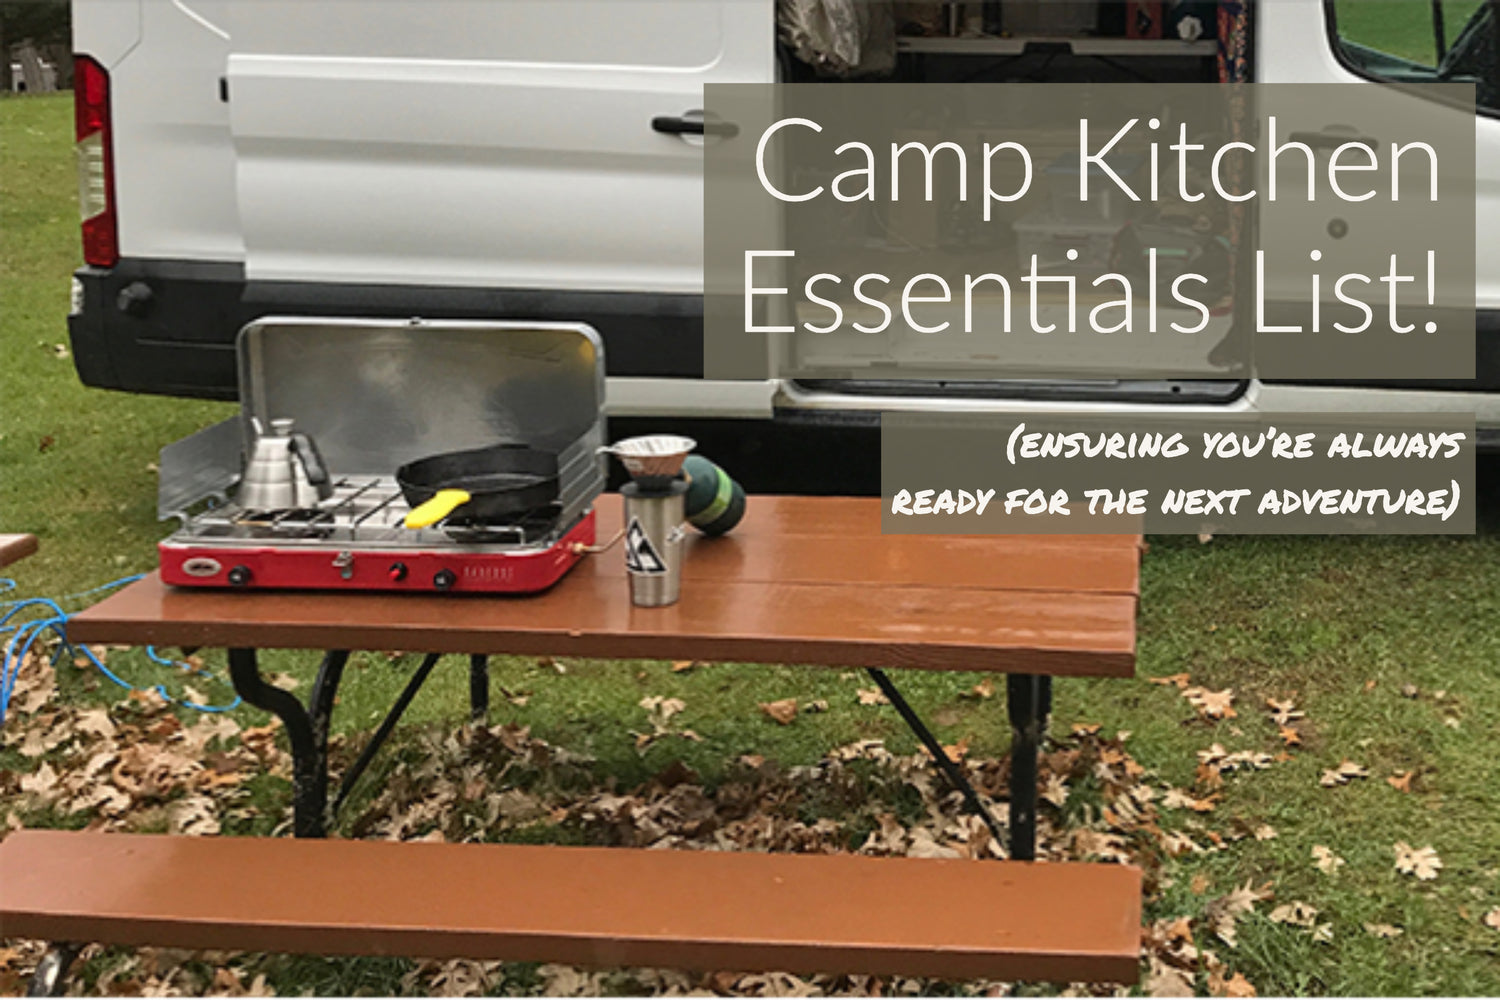 Camp Kitchen Essentials